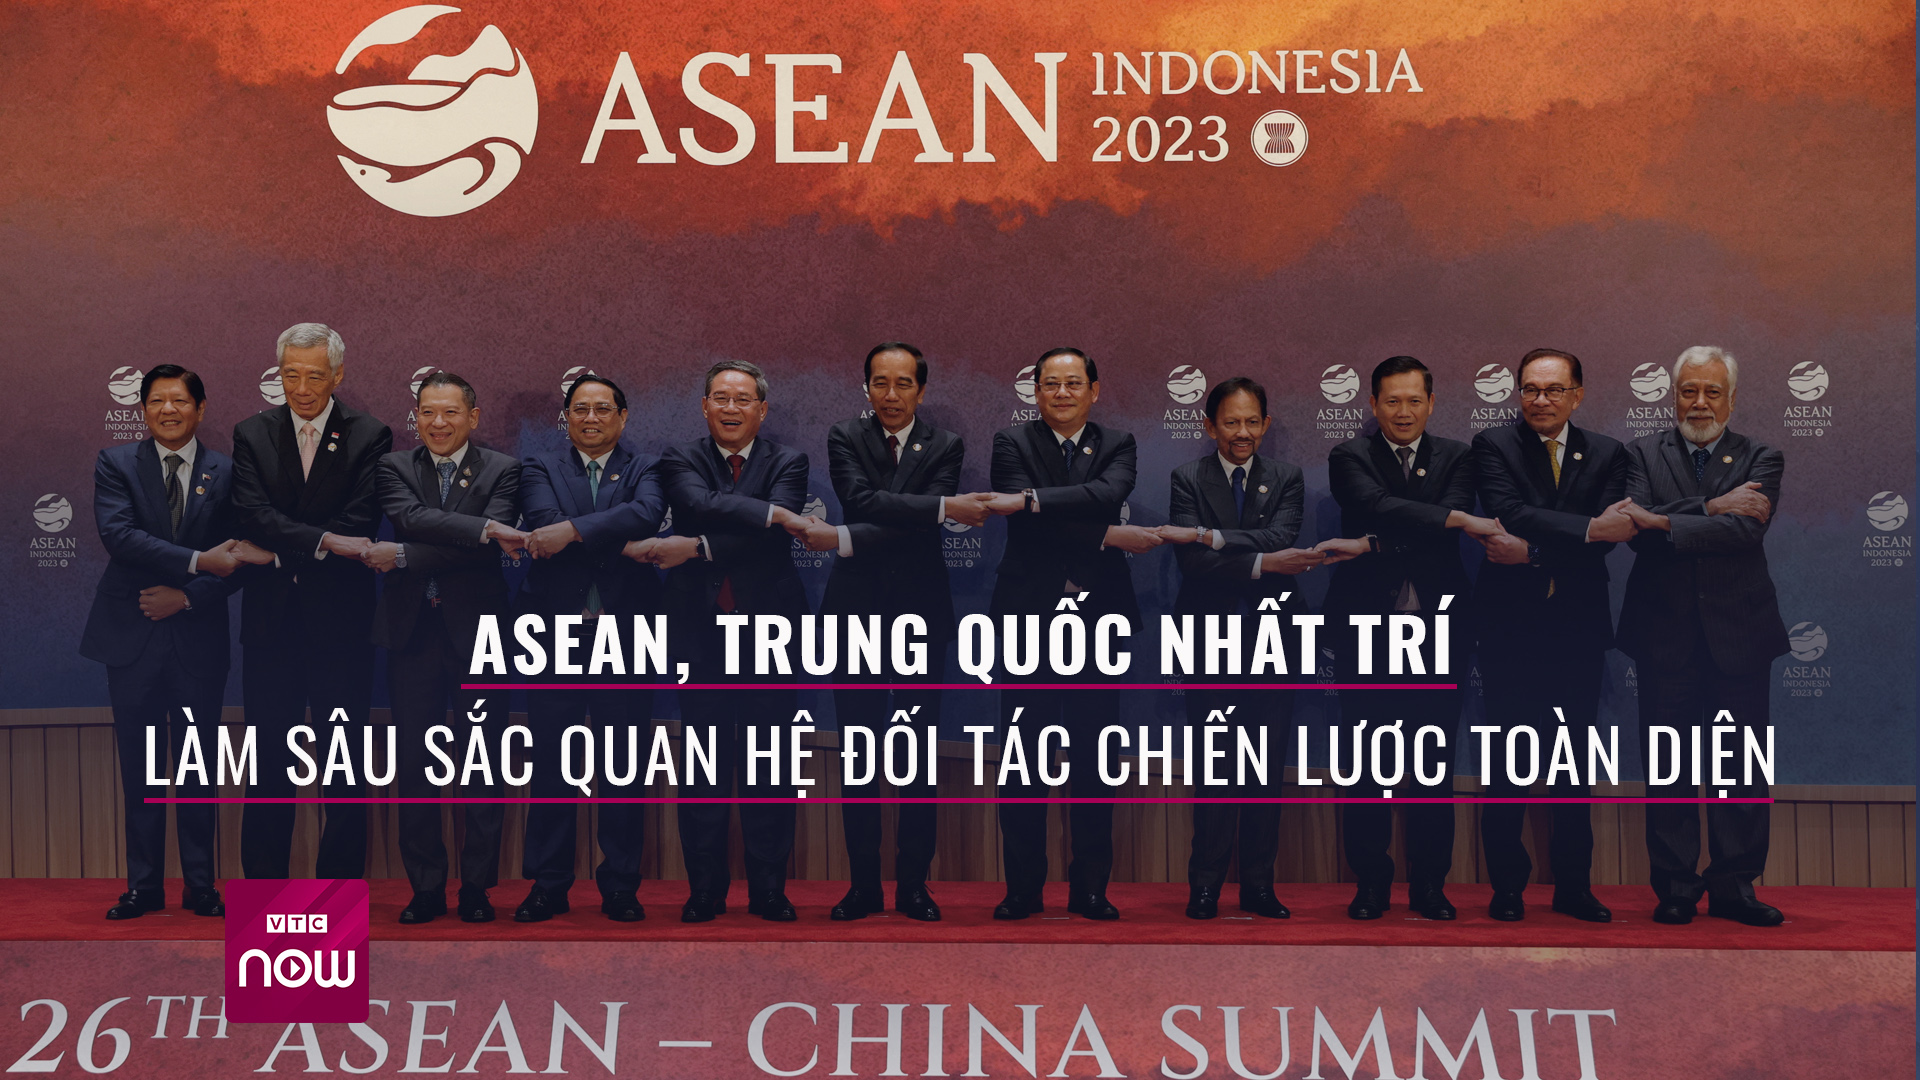 ASEAN, Trung Quốc nhất trí làm sâu sắc quan hệ đối tác chiến lược toàn diện